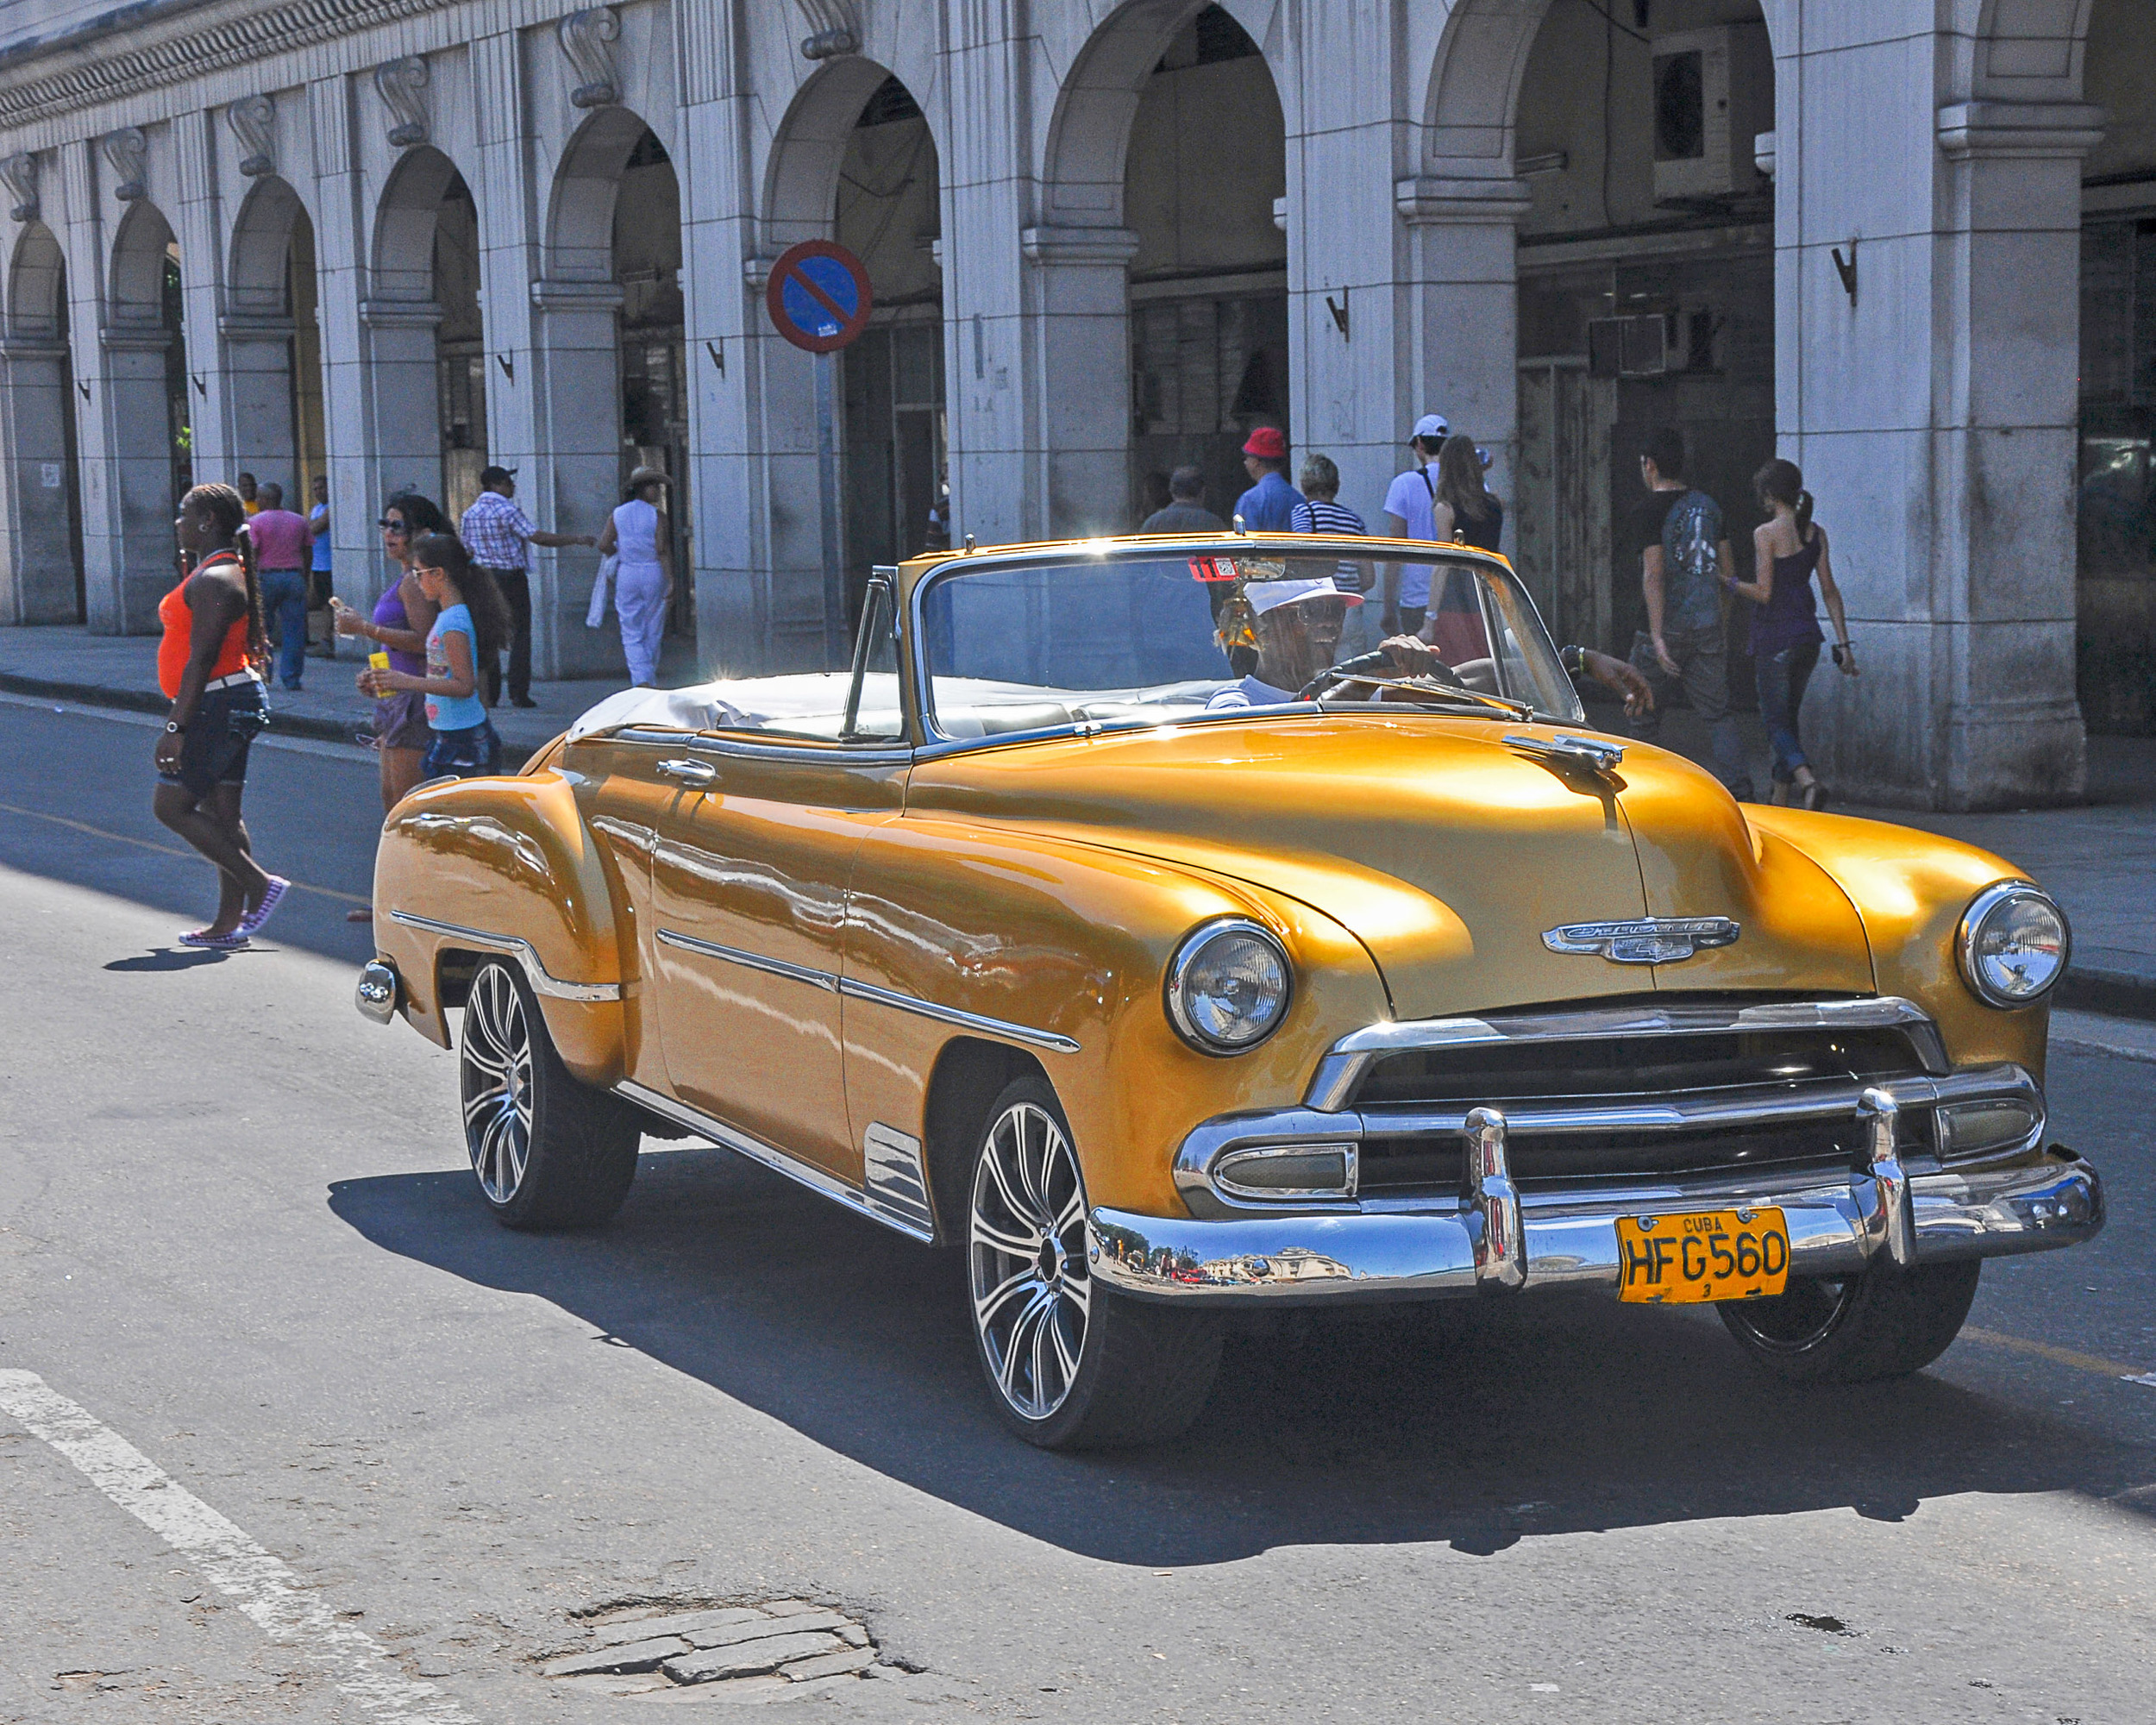 151214 Cuba Car Gold 8x10-2039130602.jpg